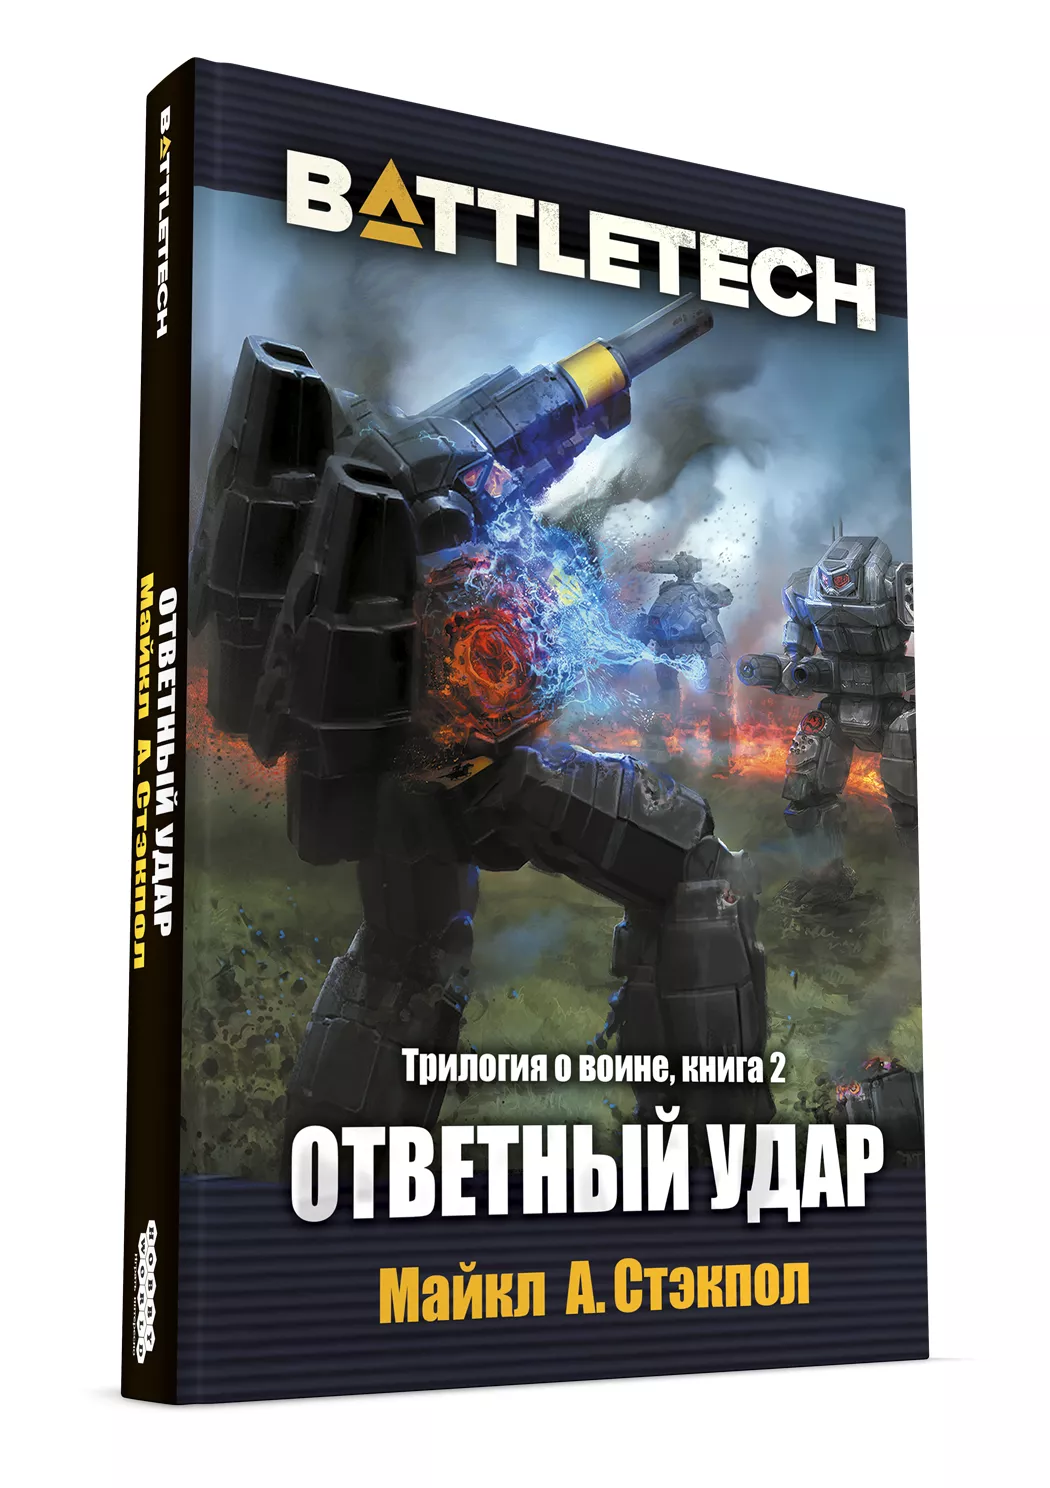 Трилогия о воине Майкла А. Стэкпоула — первое русское издание художественной классики BattleTech